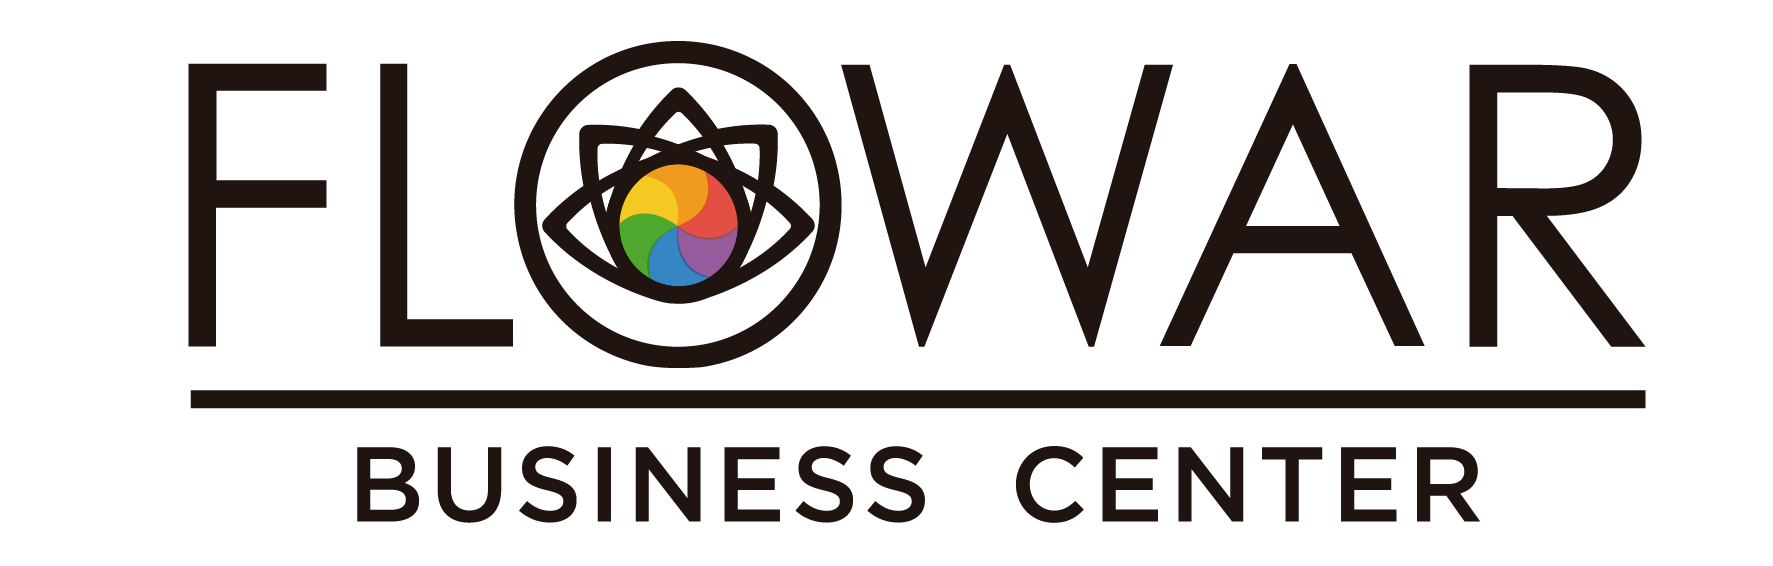 Flowar Business Center logo